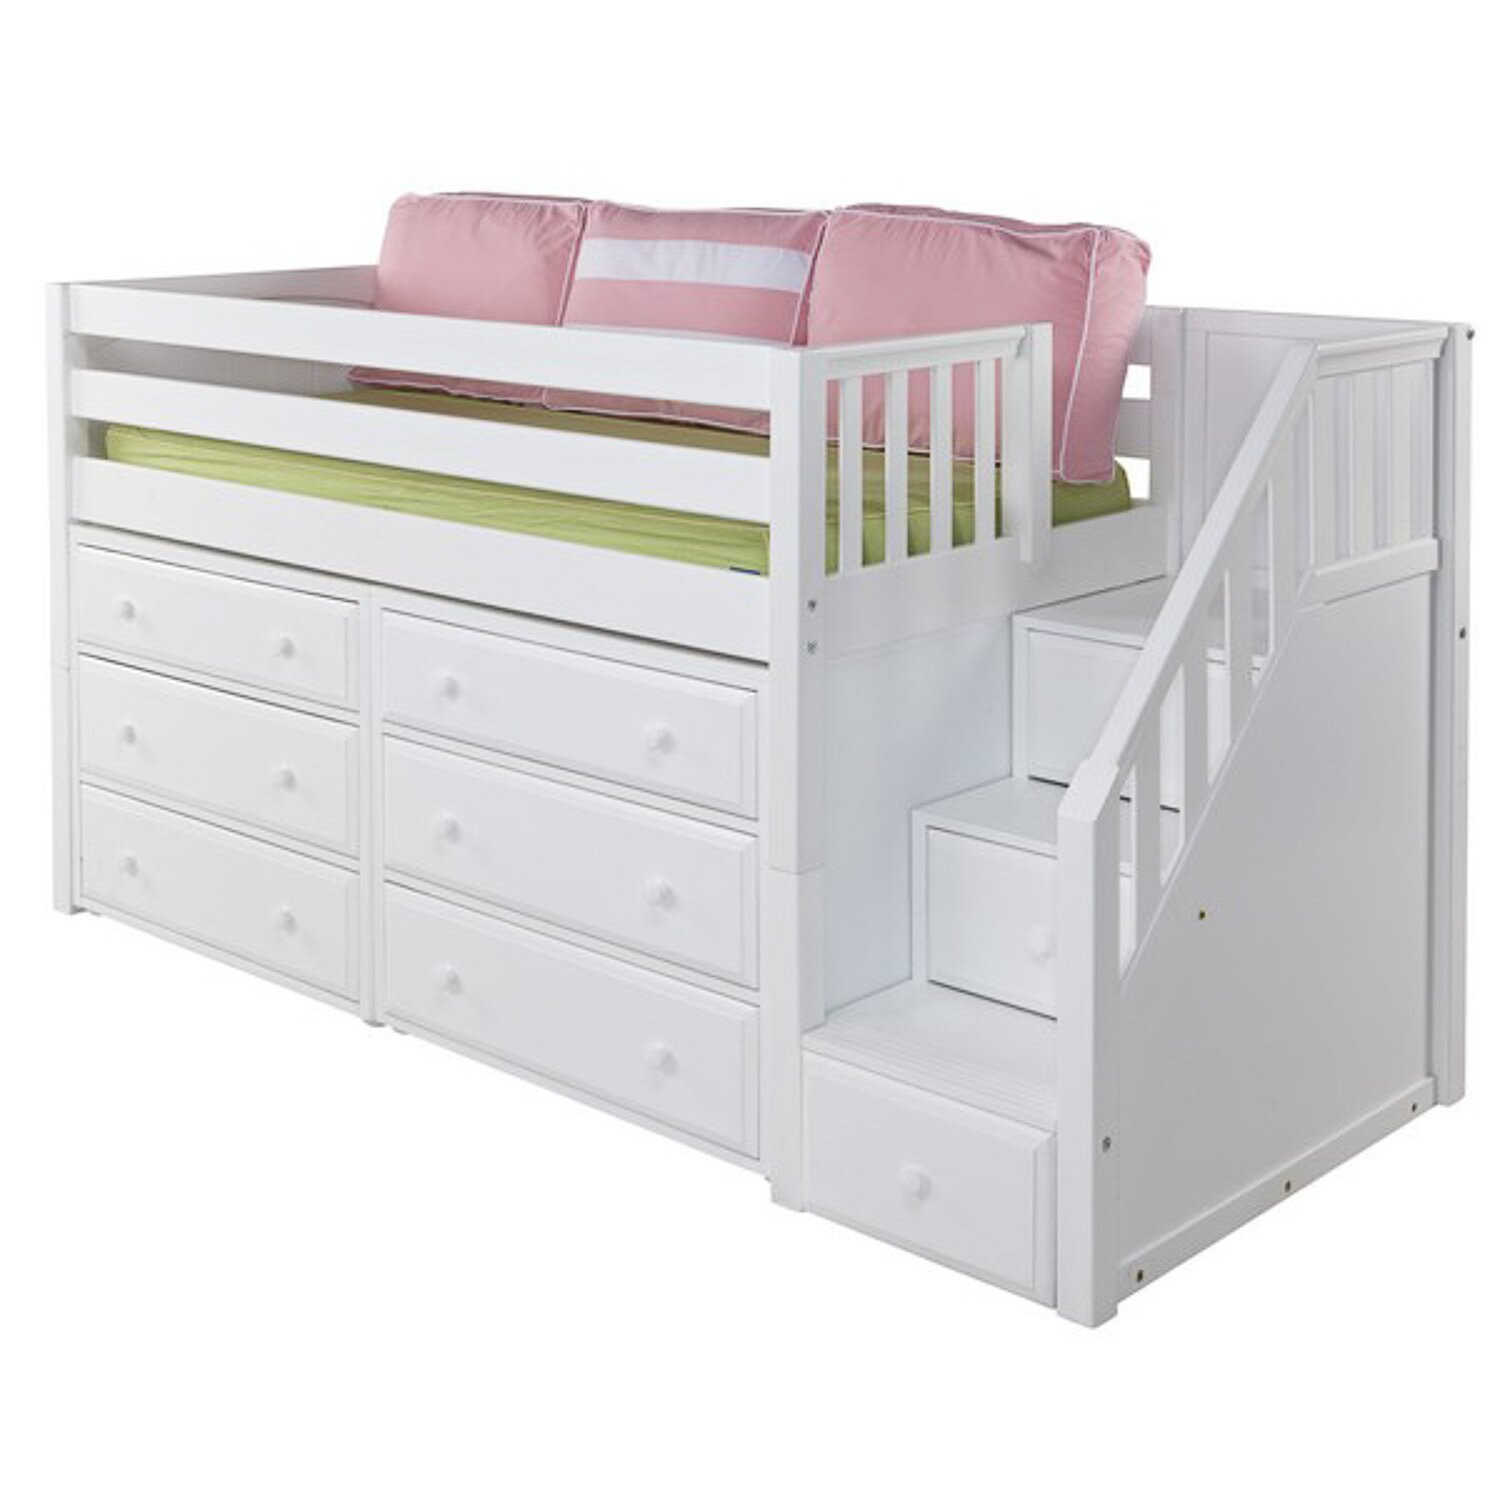 Kids Loft Bed With Storage
 Maxtrix Kids Great3 Low Loft Bed with Storage & Reviews